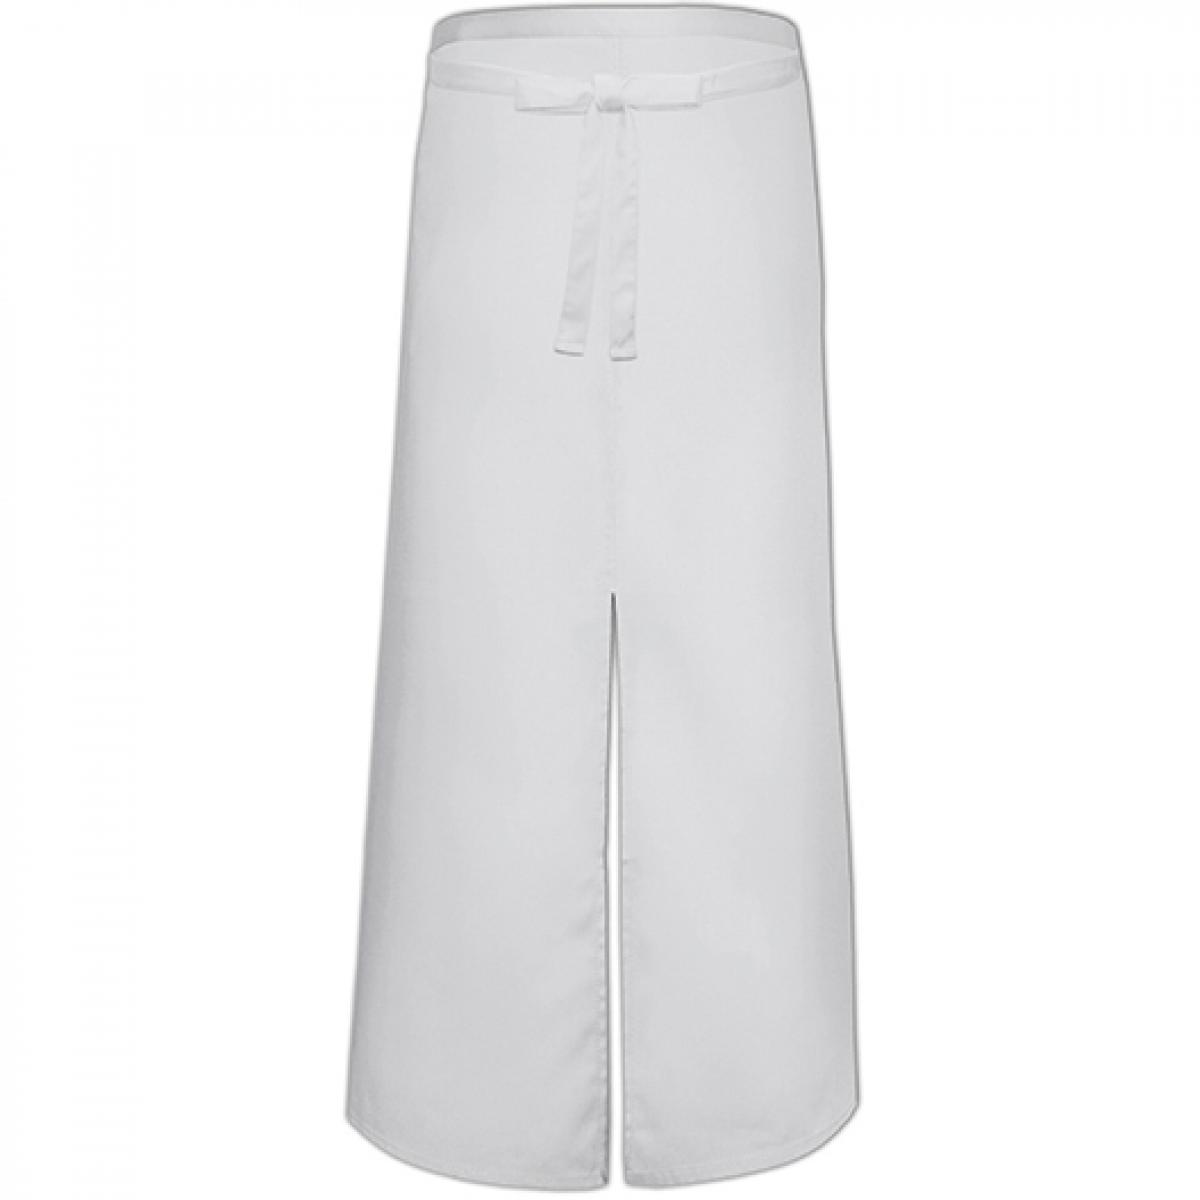 Hersteller: Link Kitchen Wear Herstellernummer: FS100100SP Artikelbezeichnung: Bistro Apron with Split - 100 x 100 cm - Waschbar bis 60 °C Farbe: White